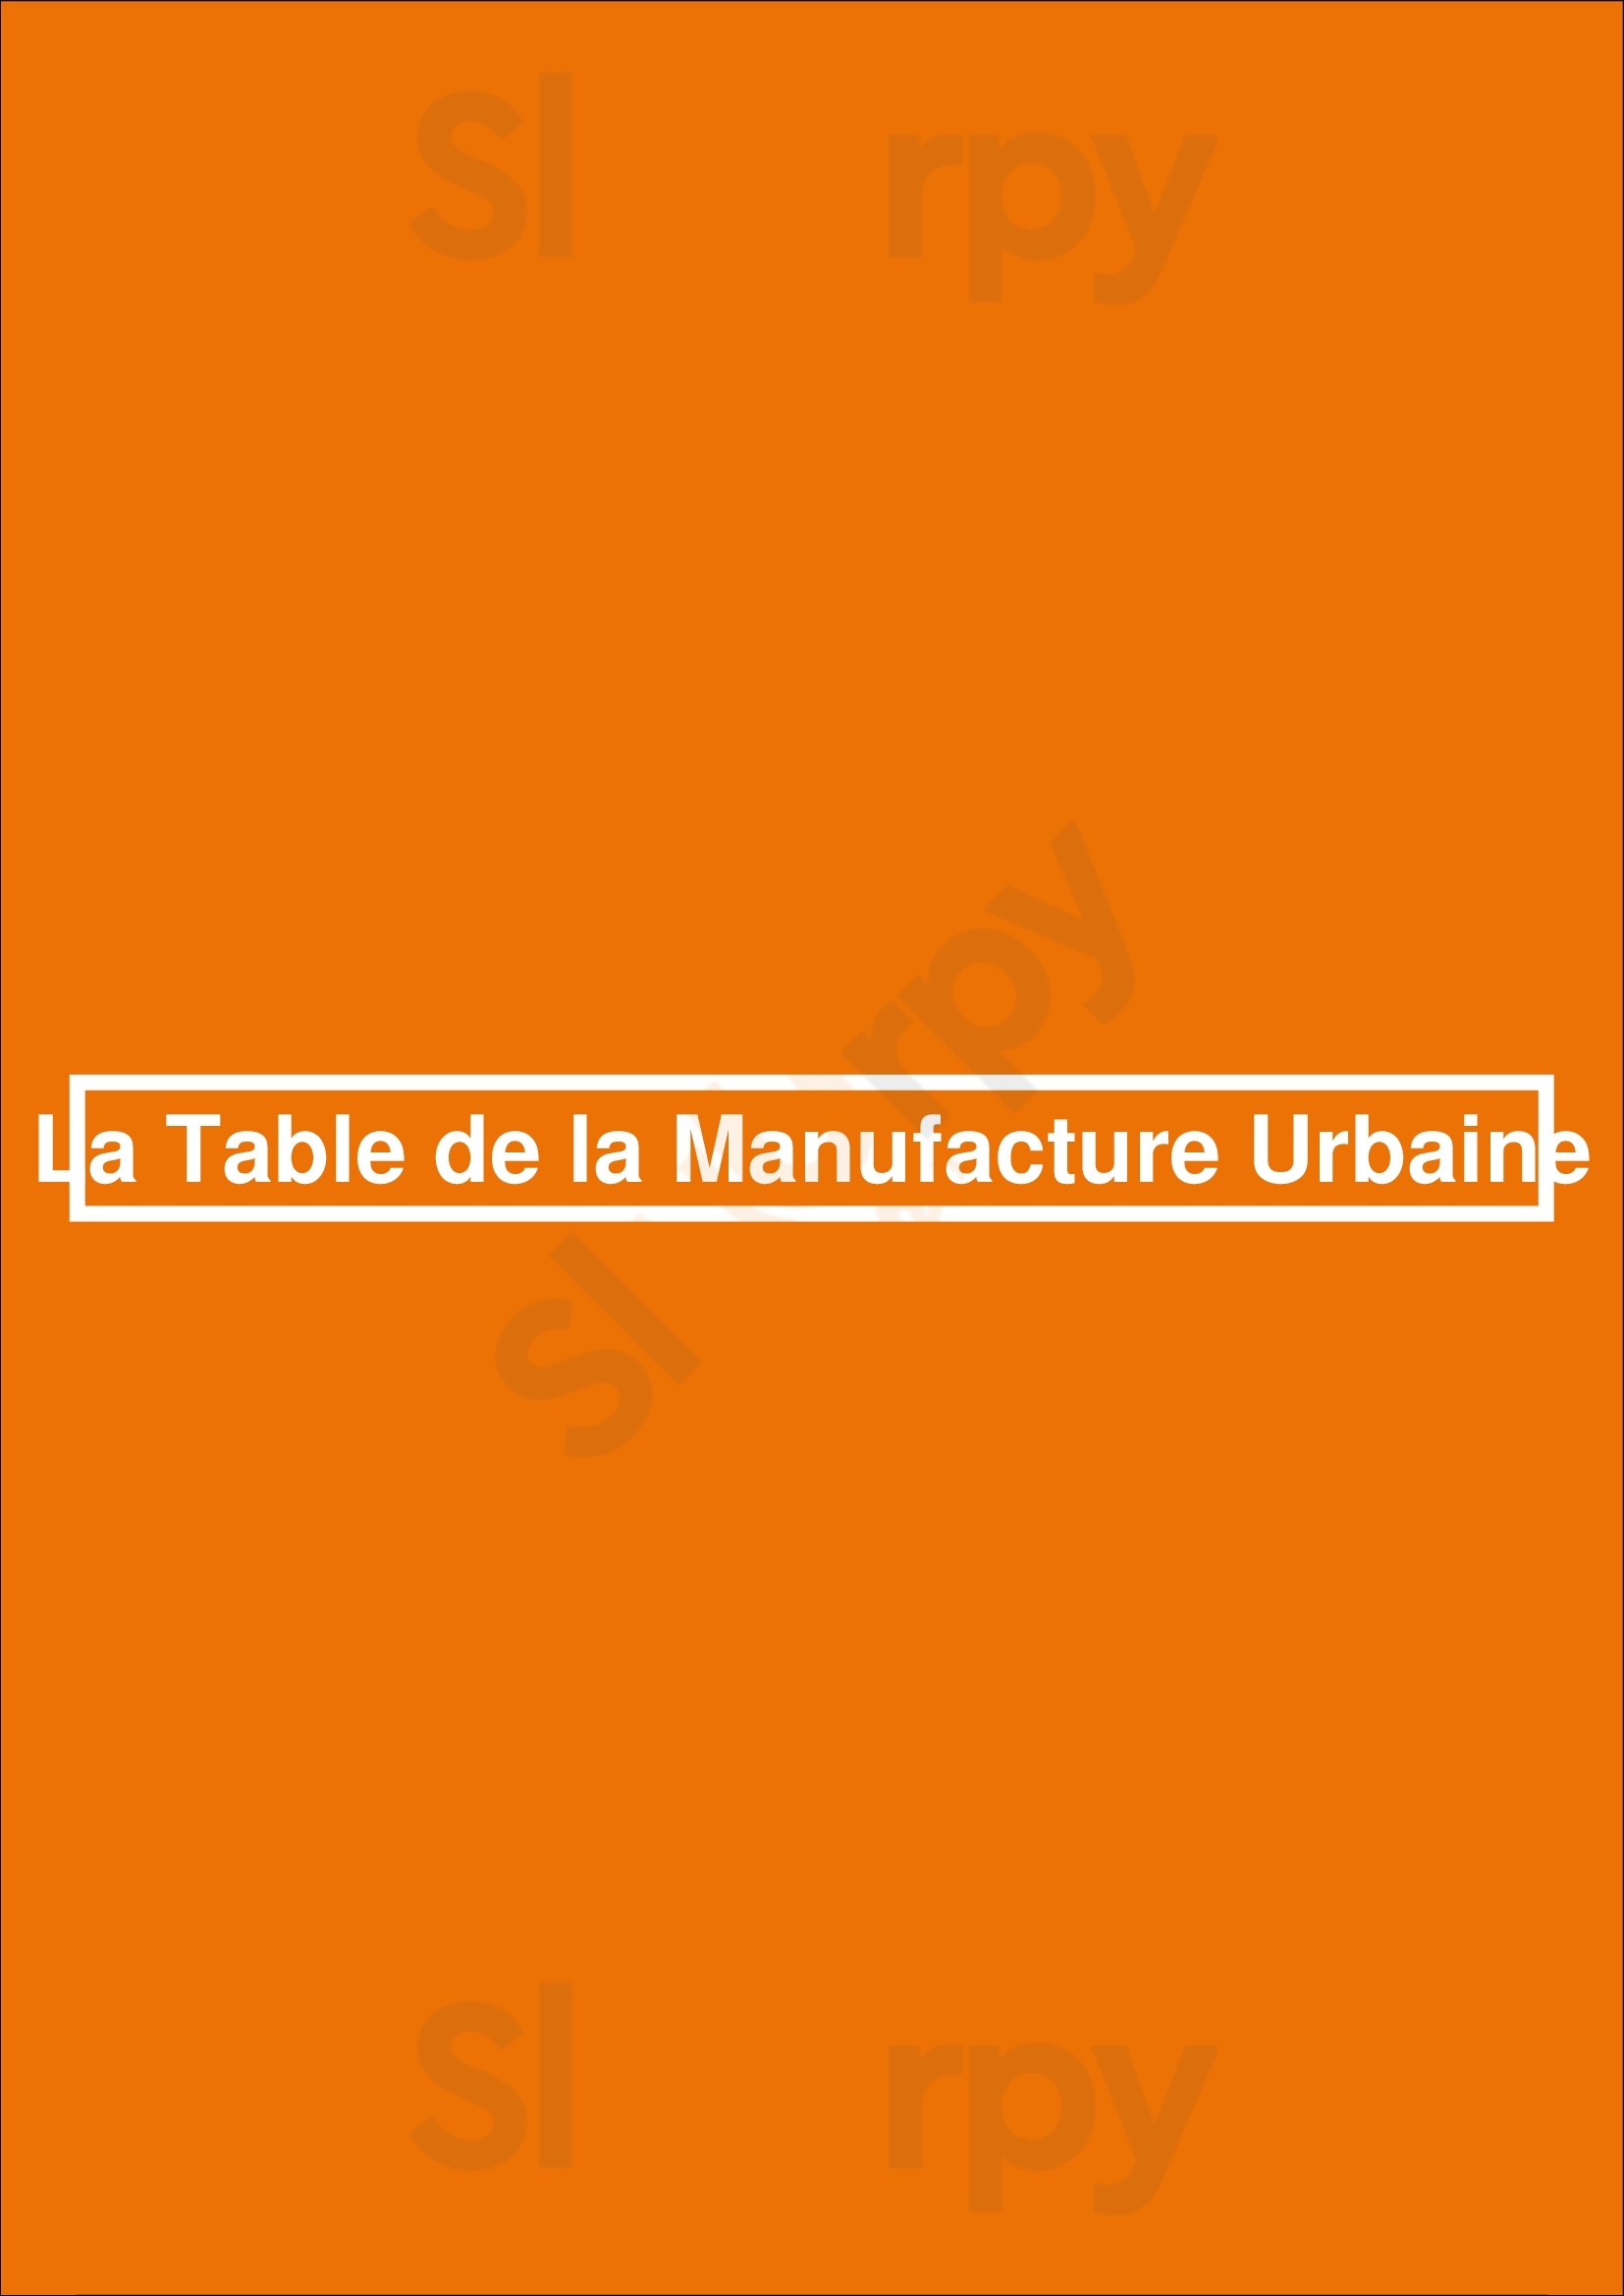 La Table De La Manufacture Urbaine Charleroi Menu - 1